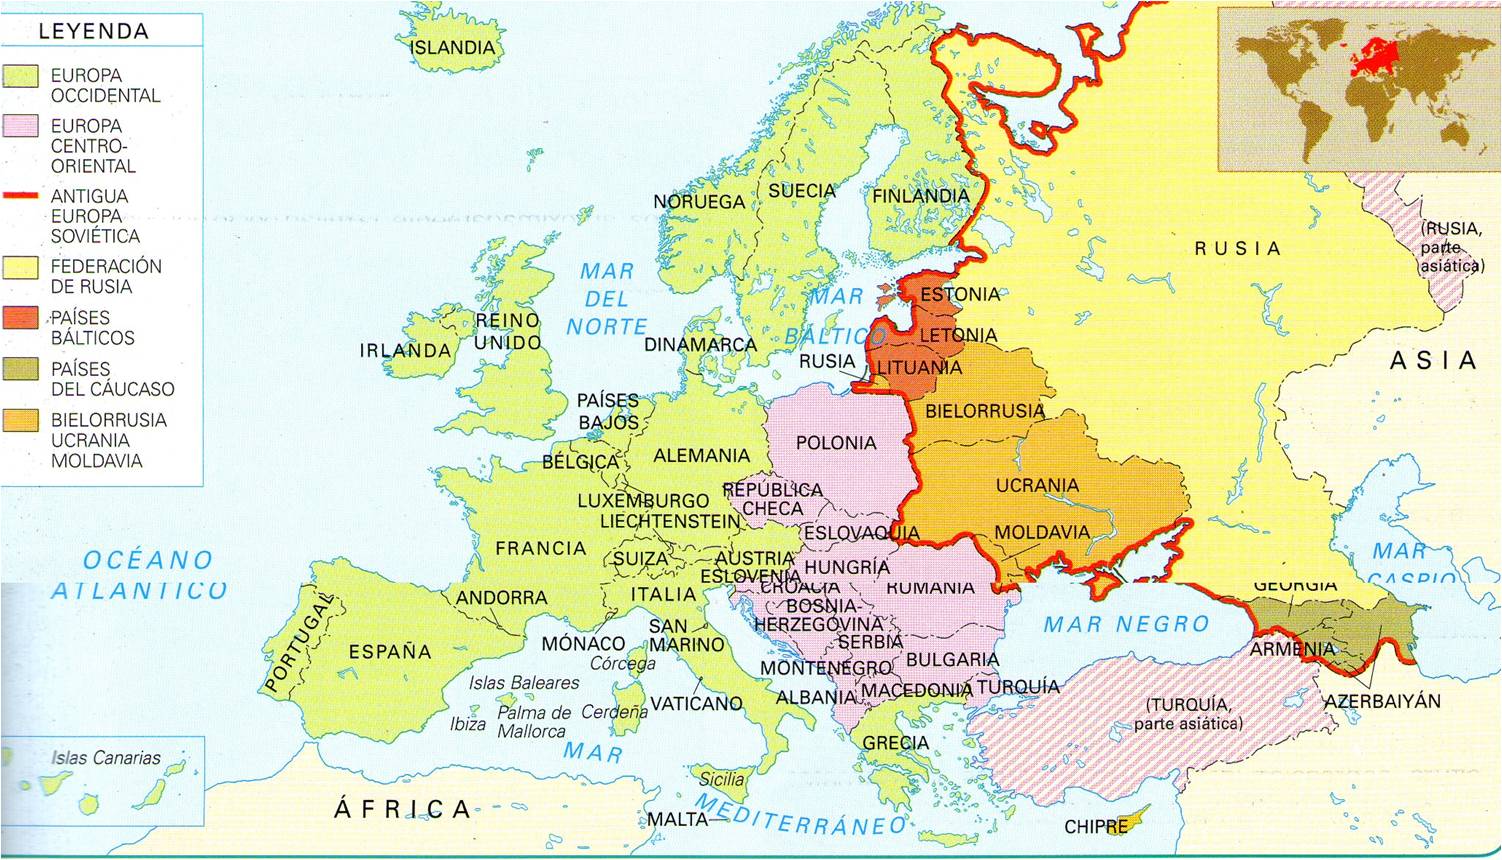 Europa occidental y oriental